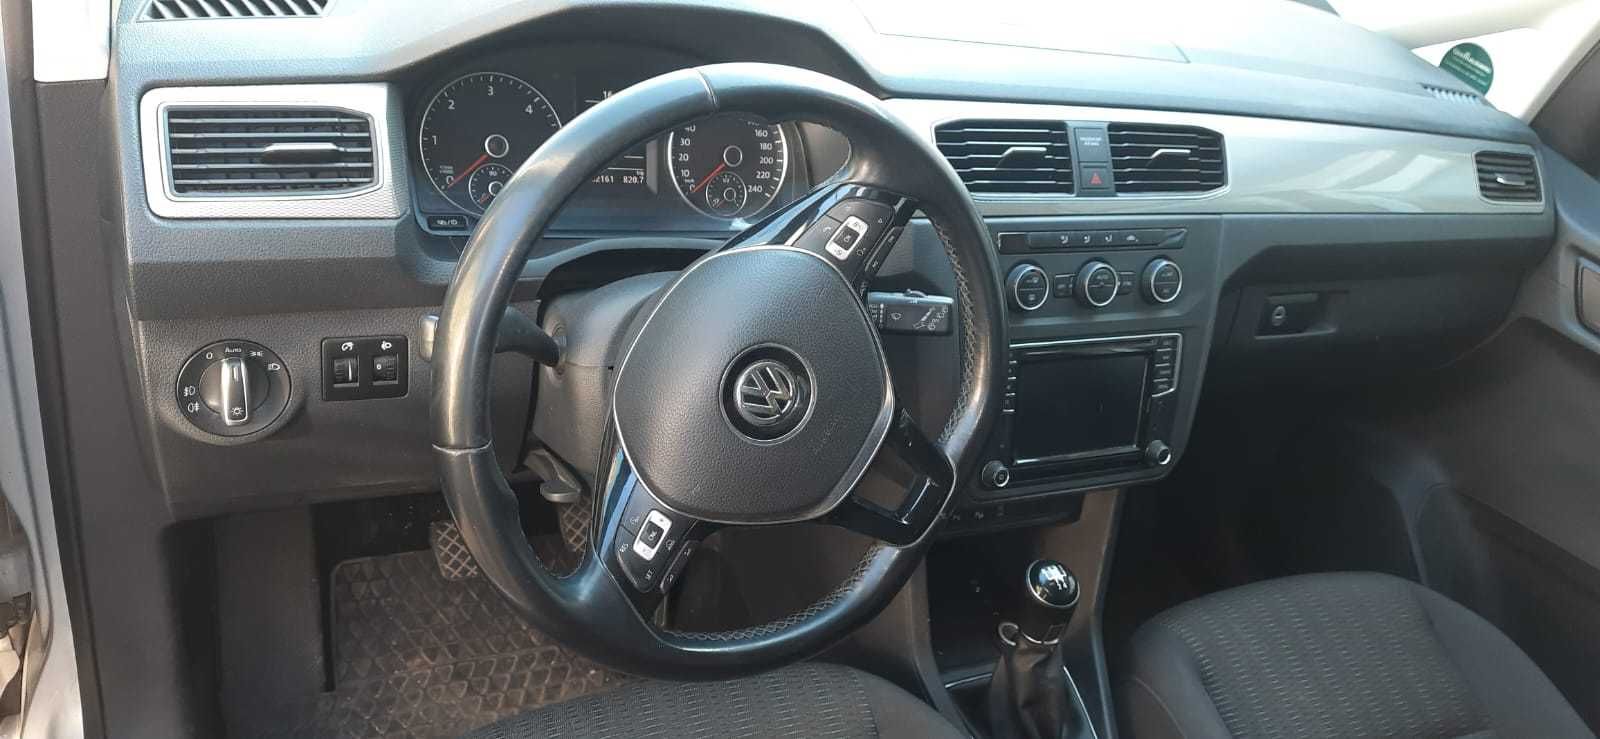 Volkswagen Caddy 2017 diesel